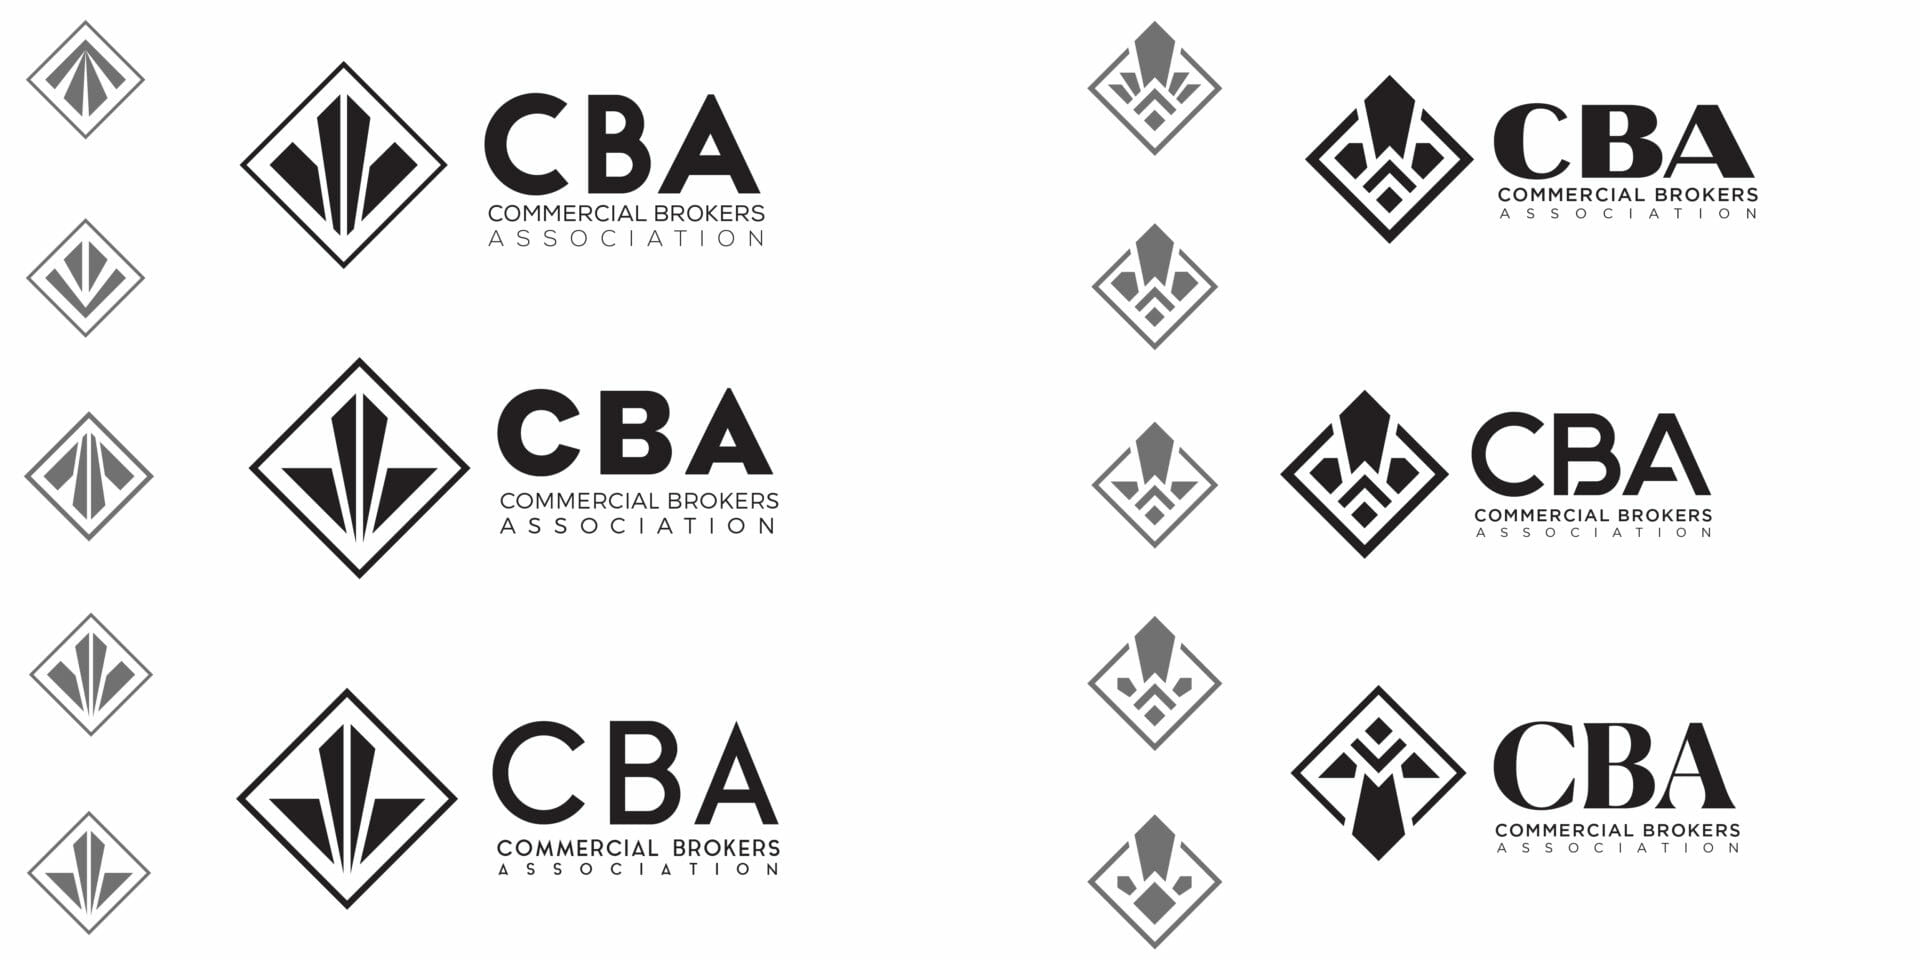 CBA logo concepts